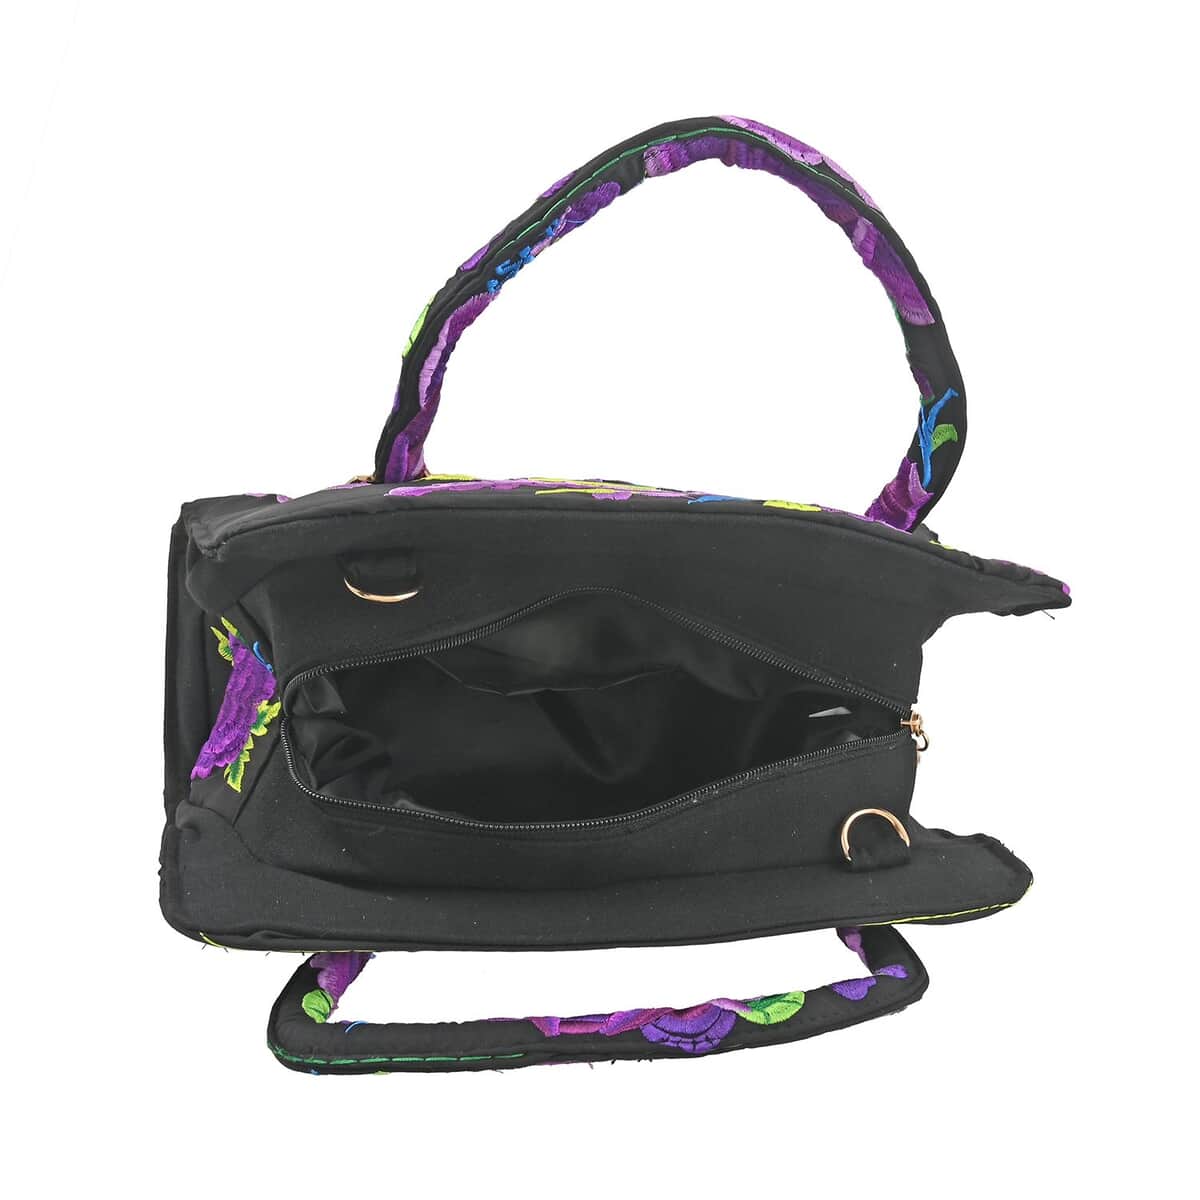 Purple Floral Embroidered Handbag with Shoulder Strap image number 4